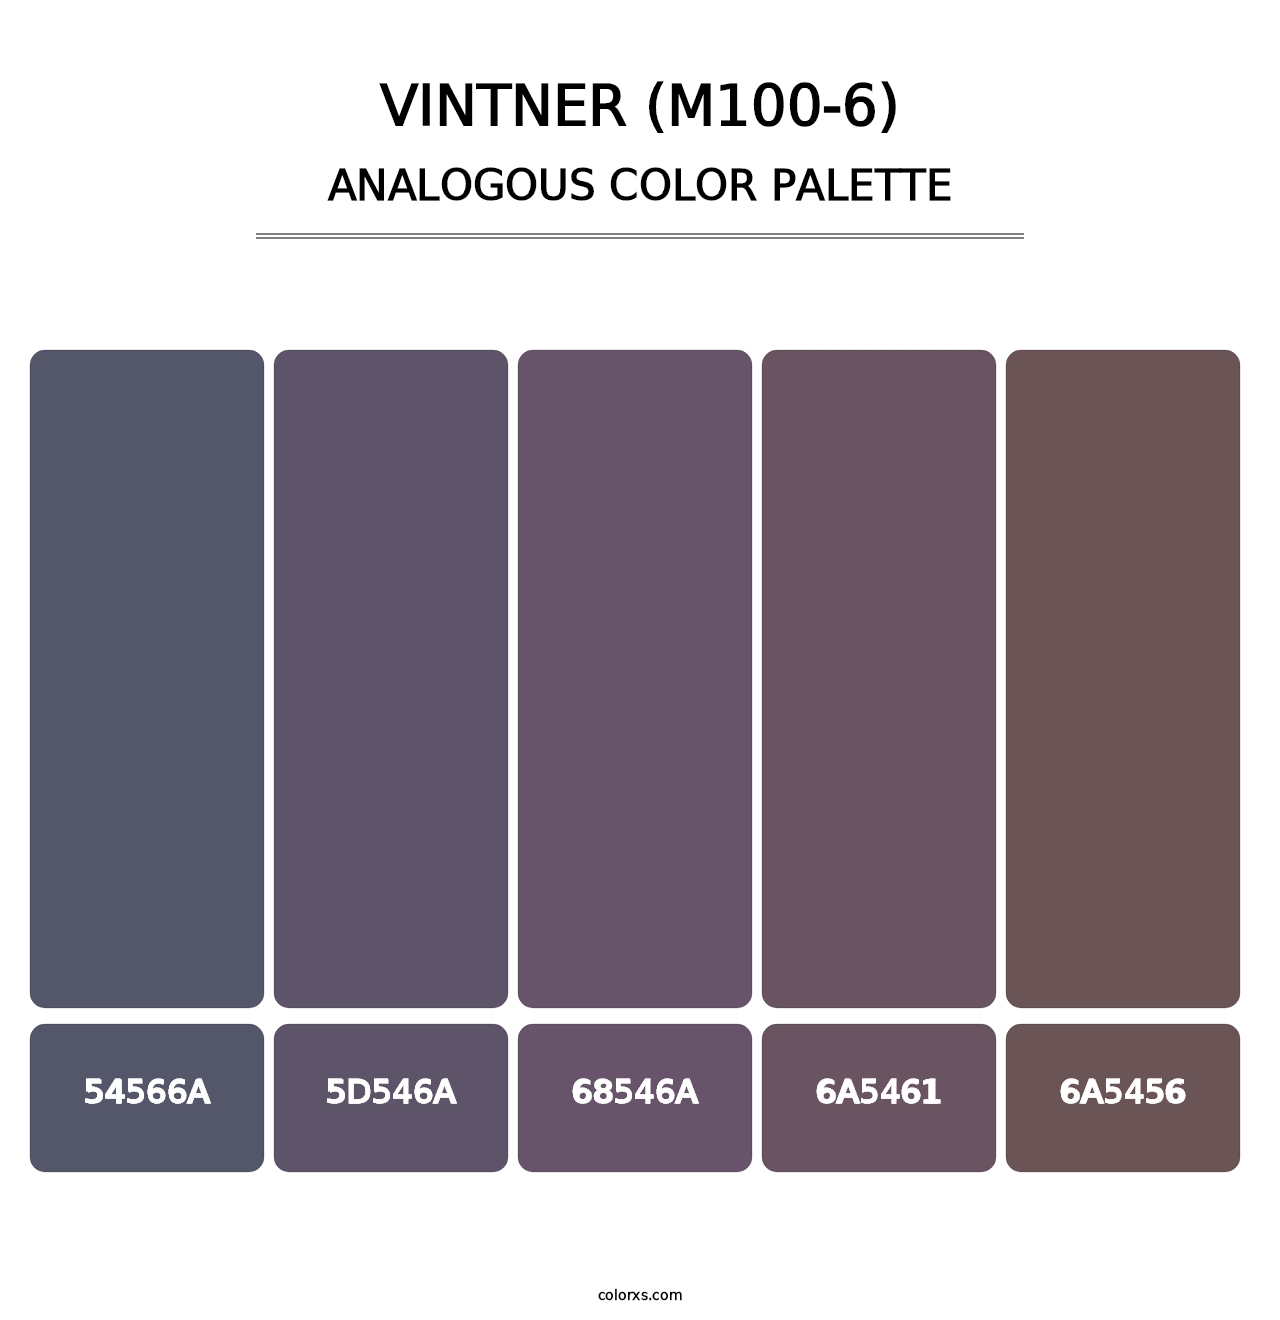 Vintner (M100-6) - Analogous Color Palette